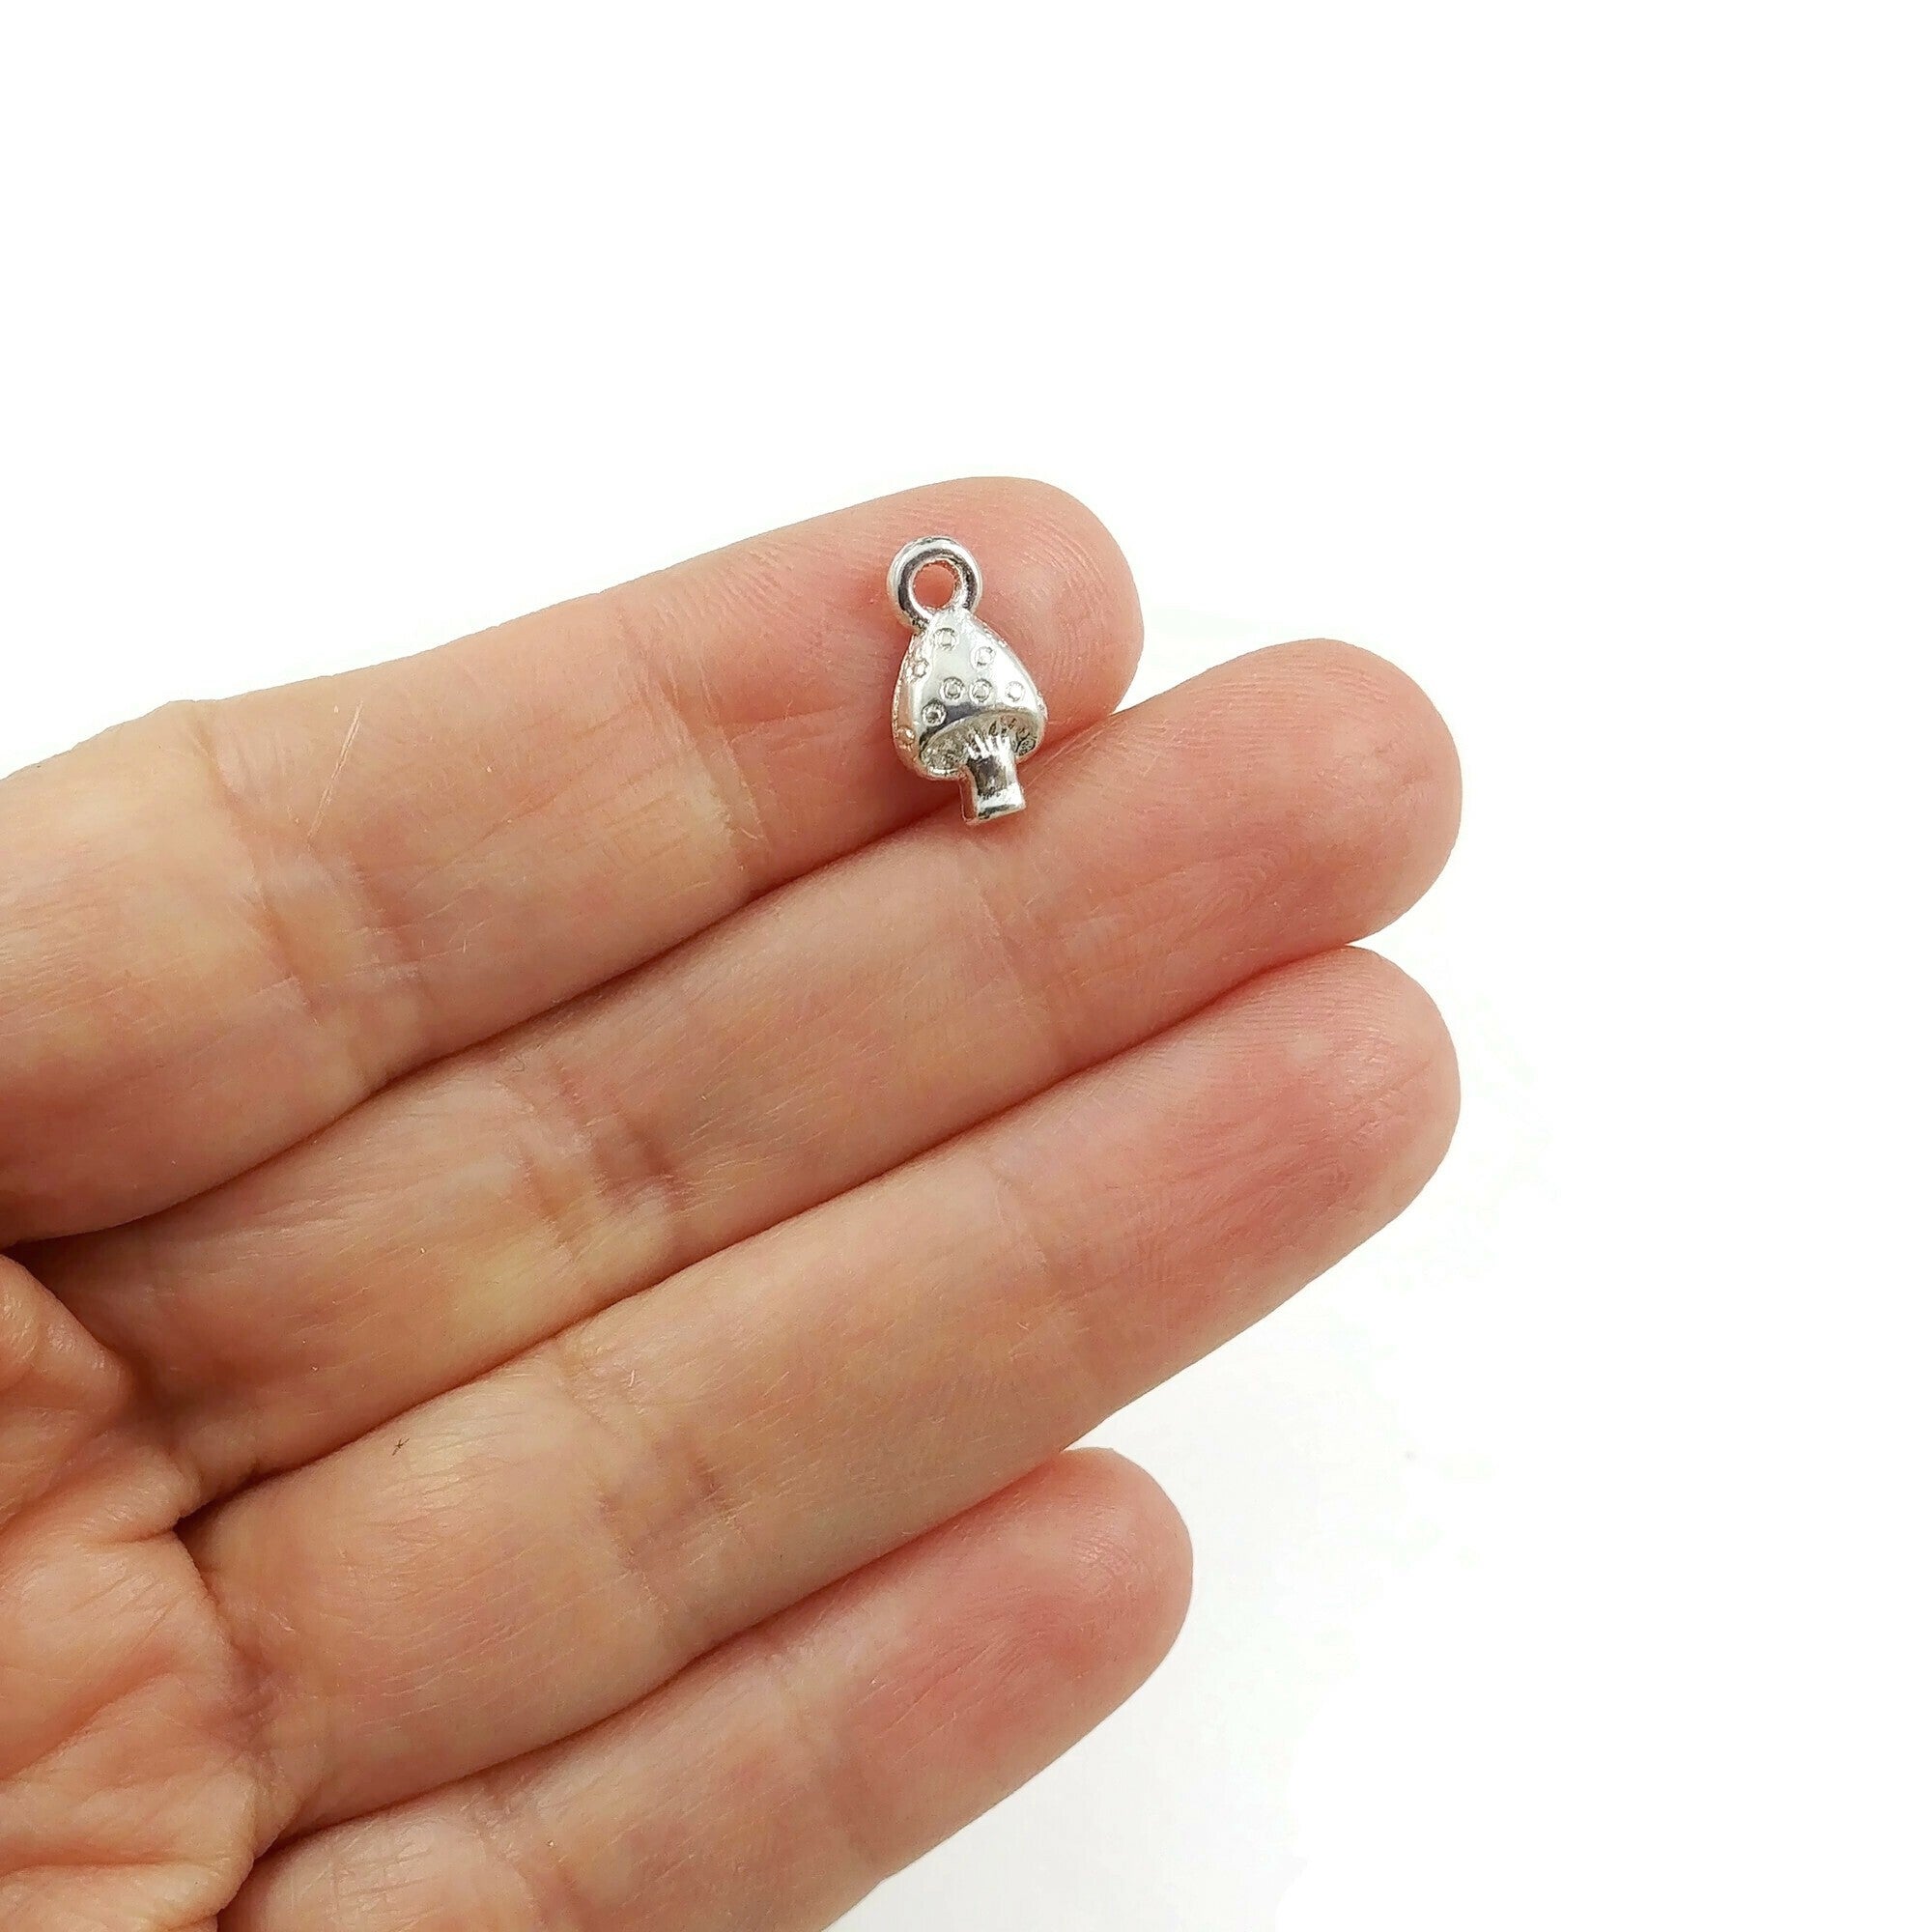 10 Petits pendentifs champignon en métal 13mm - Sans nickel, sans plomb et sans cadmium